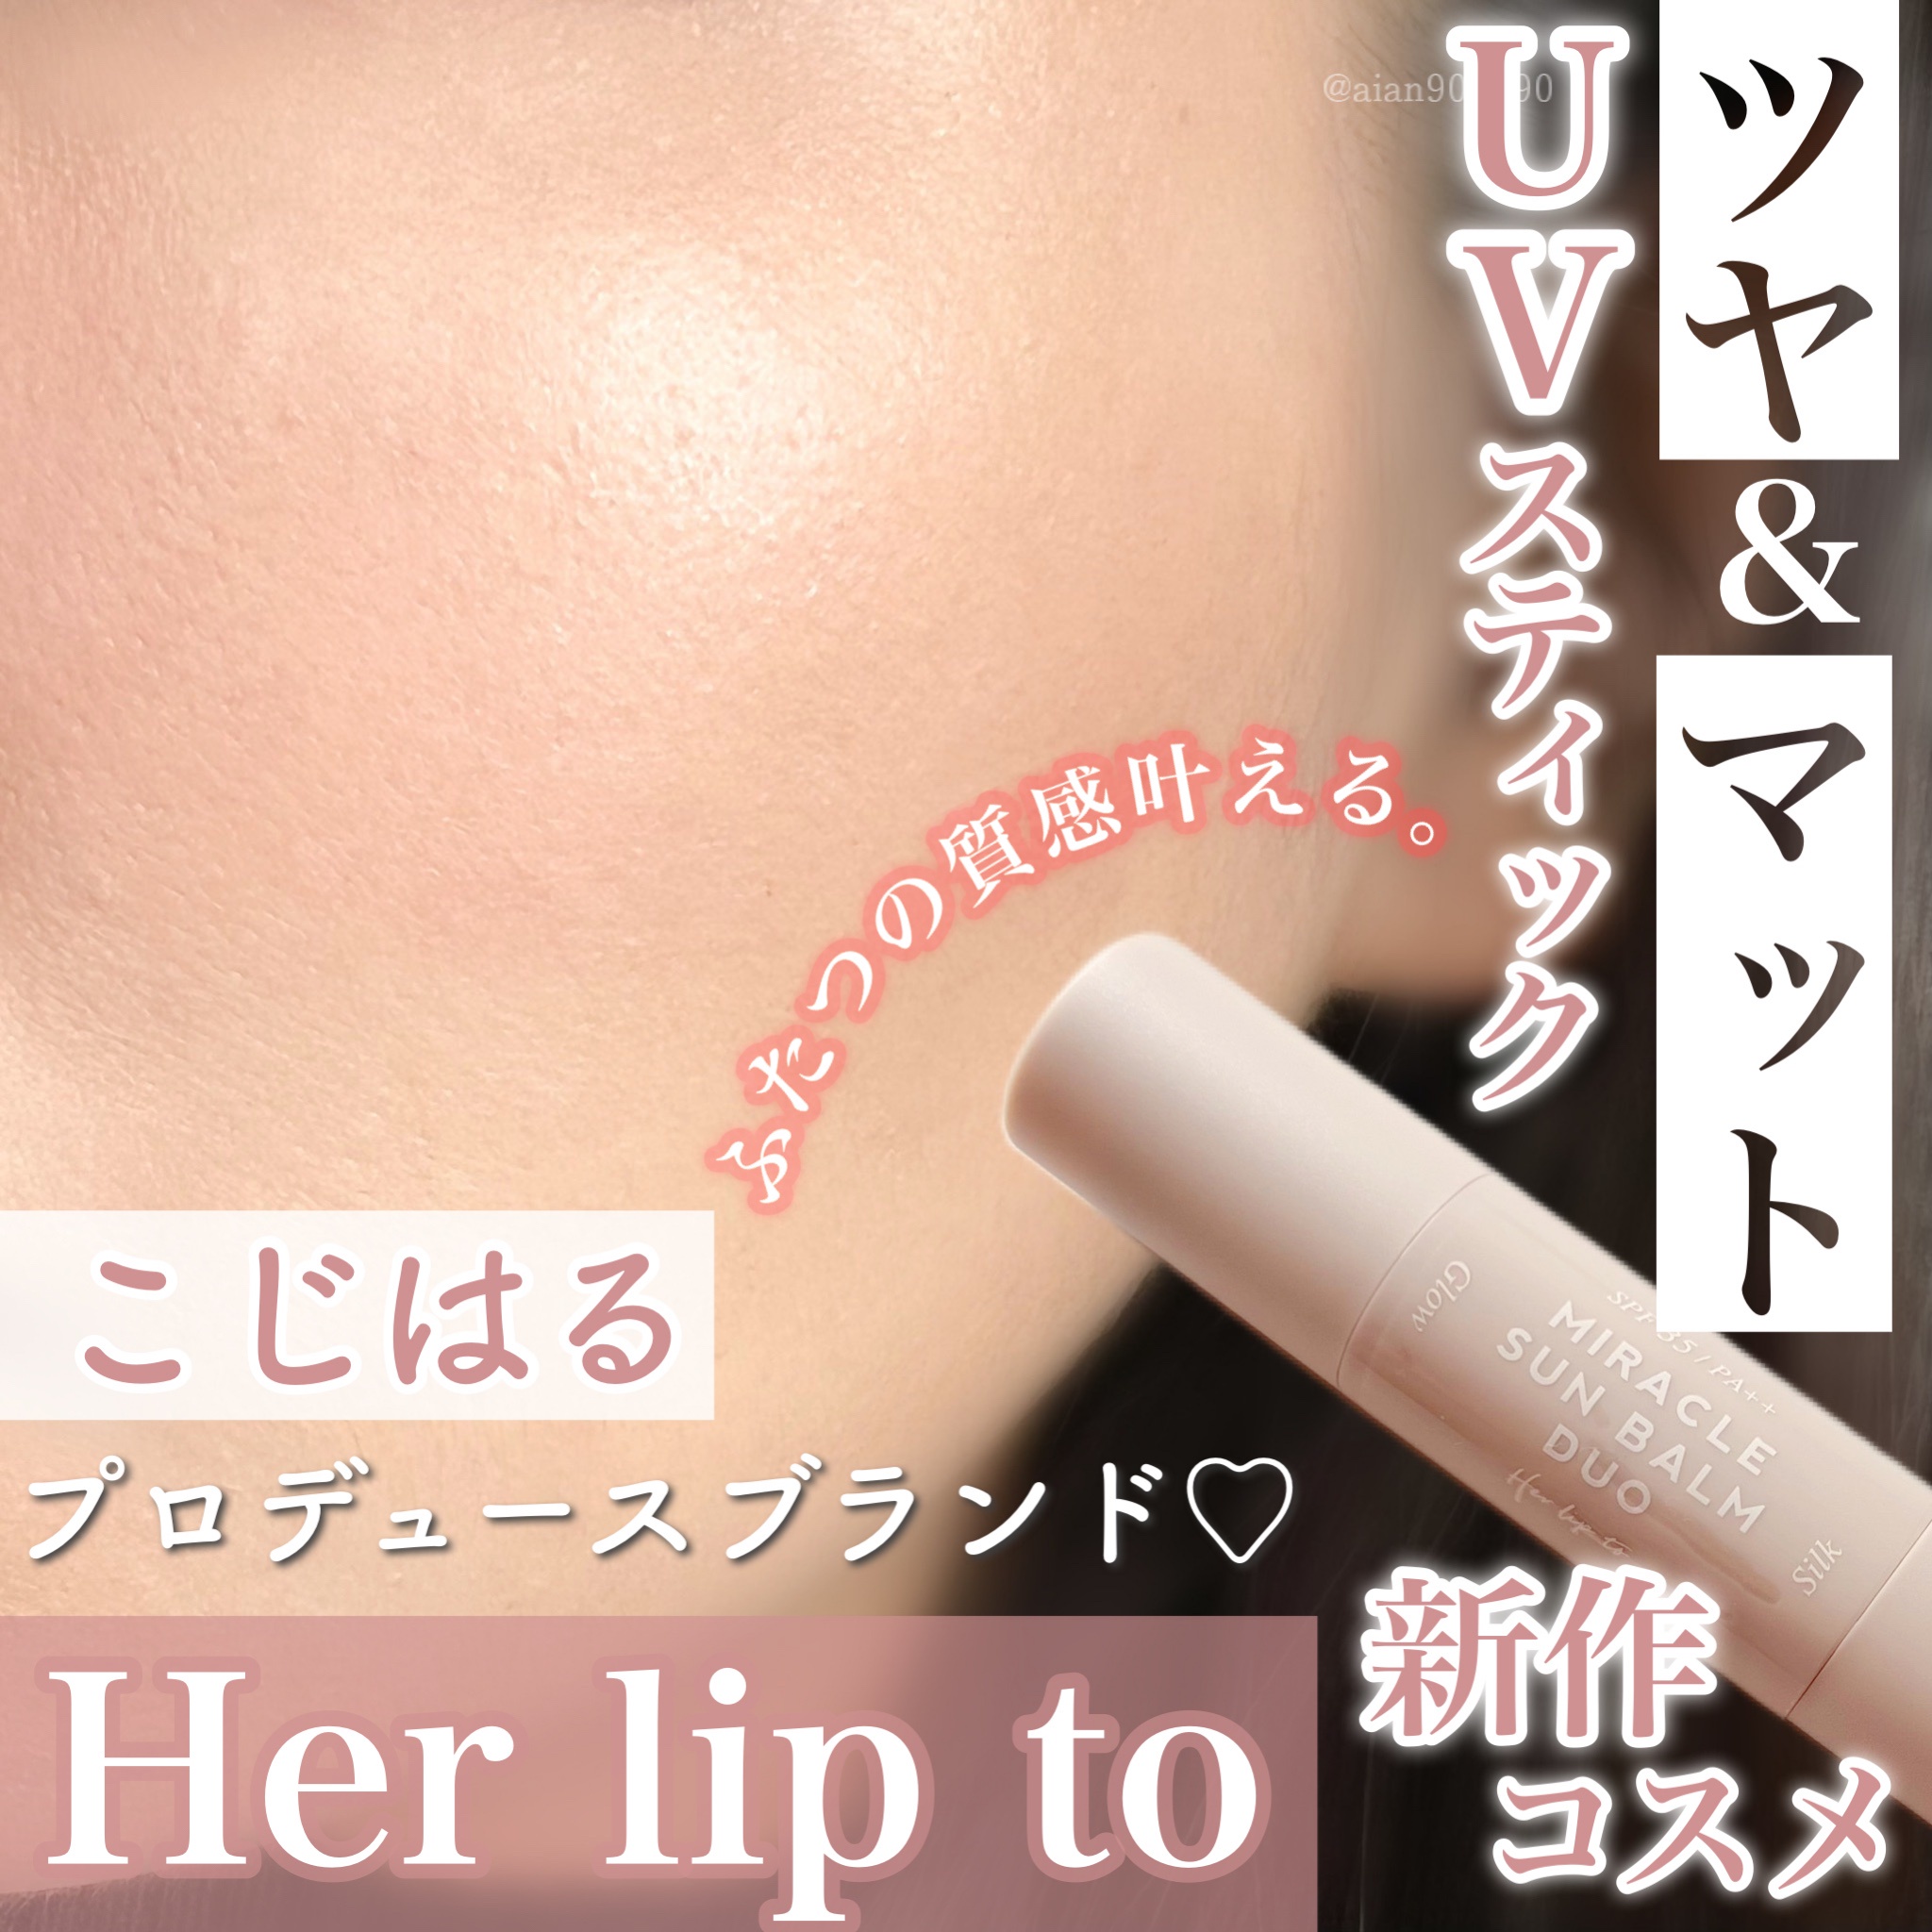 Her lip to BEAUTY ミラクルサンバームデュオ 61％以上節約 - フェイス